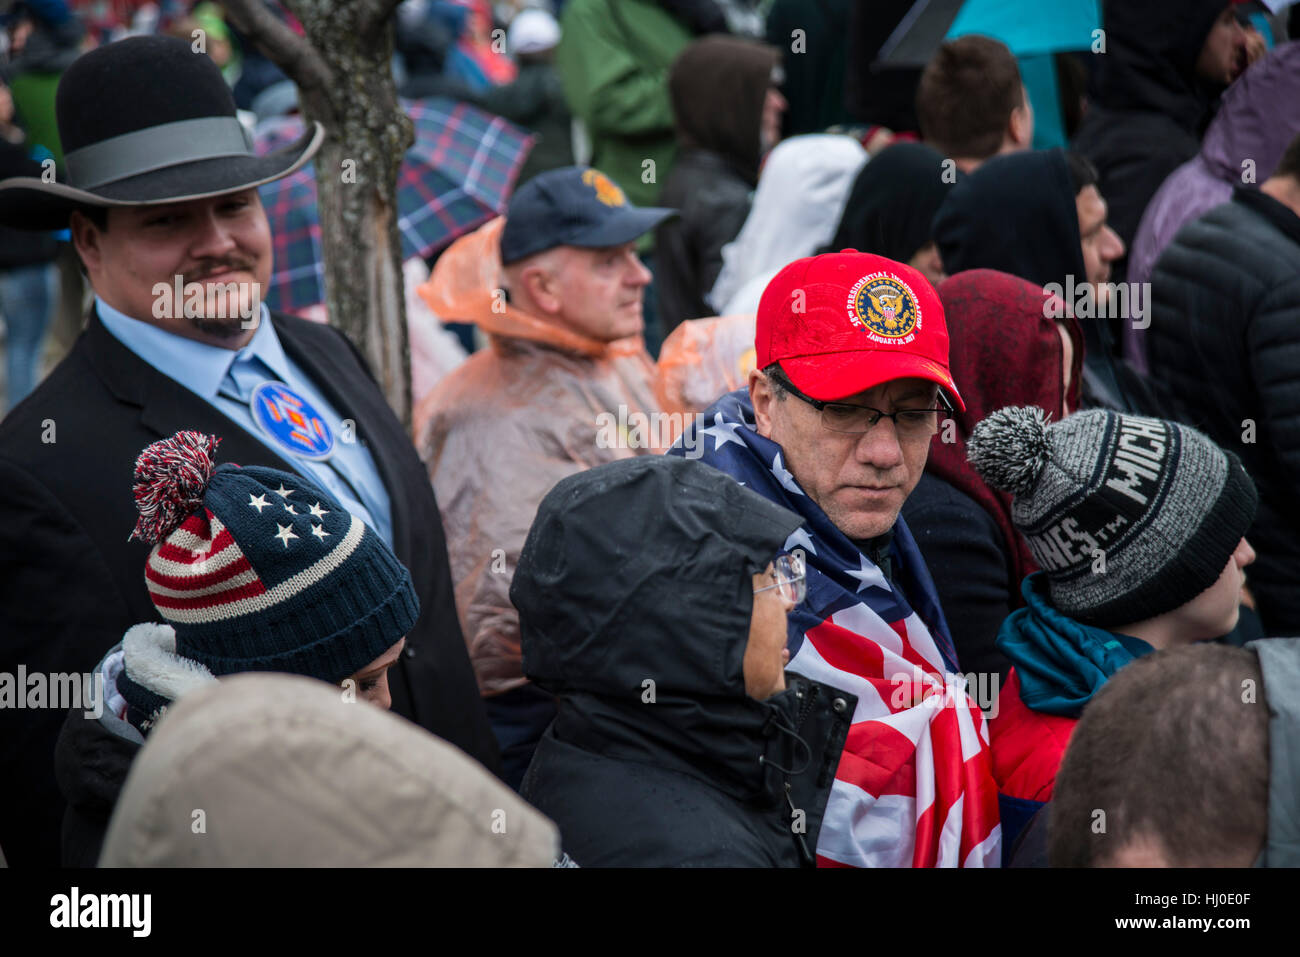 Nicht-weißer Donald Trump Unterstützer Native American Gentleman den ganzen Weg von Montana, in einer großen Menge von Menschen warten auf Beginn der Eröffnungs Parade entlang Pennsylvania Ave. Trump wurde der 45. Präsident der Vereinigten Staaten. 20. Januar 2017 in Washington, DC Stockfoto